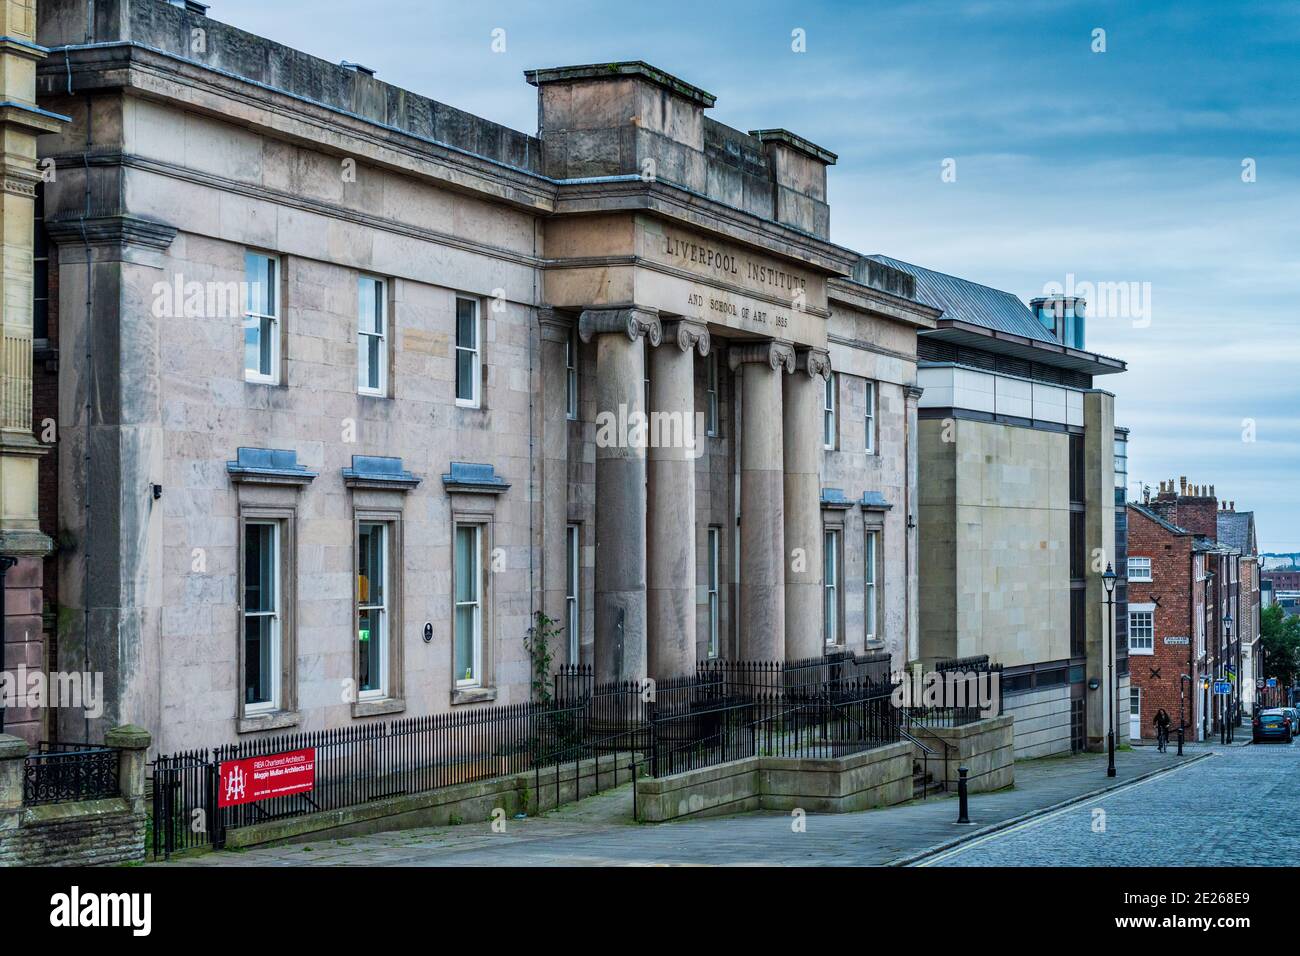 Le Liverpool Institute for Performing Arts ou LIPA. Ouvert en 1996 il a été fondé par le musicien Paul McCartney et Mark Featherstone-witty. Banque D'Images